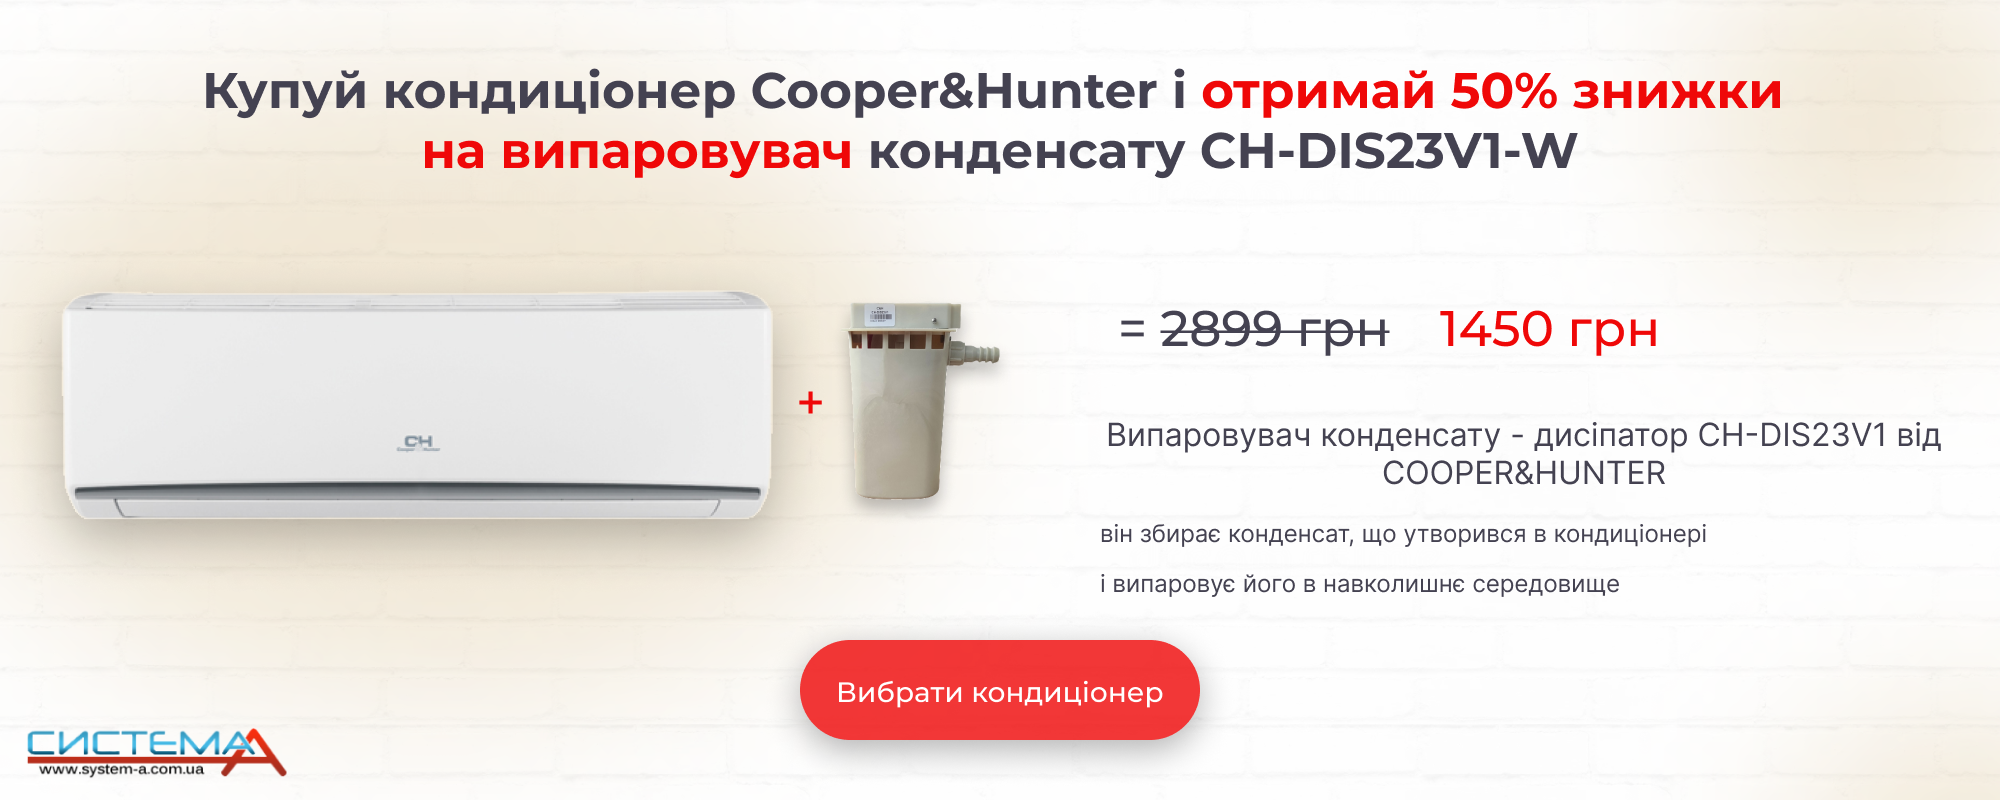 Купуй кондиціонер Cooper&Hunter і отримай 50% знижки на випаровувач конденсату CH-DIS23V1-W